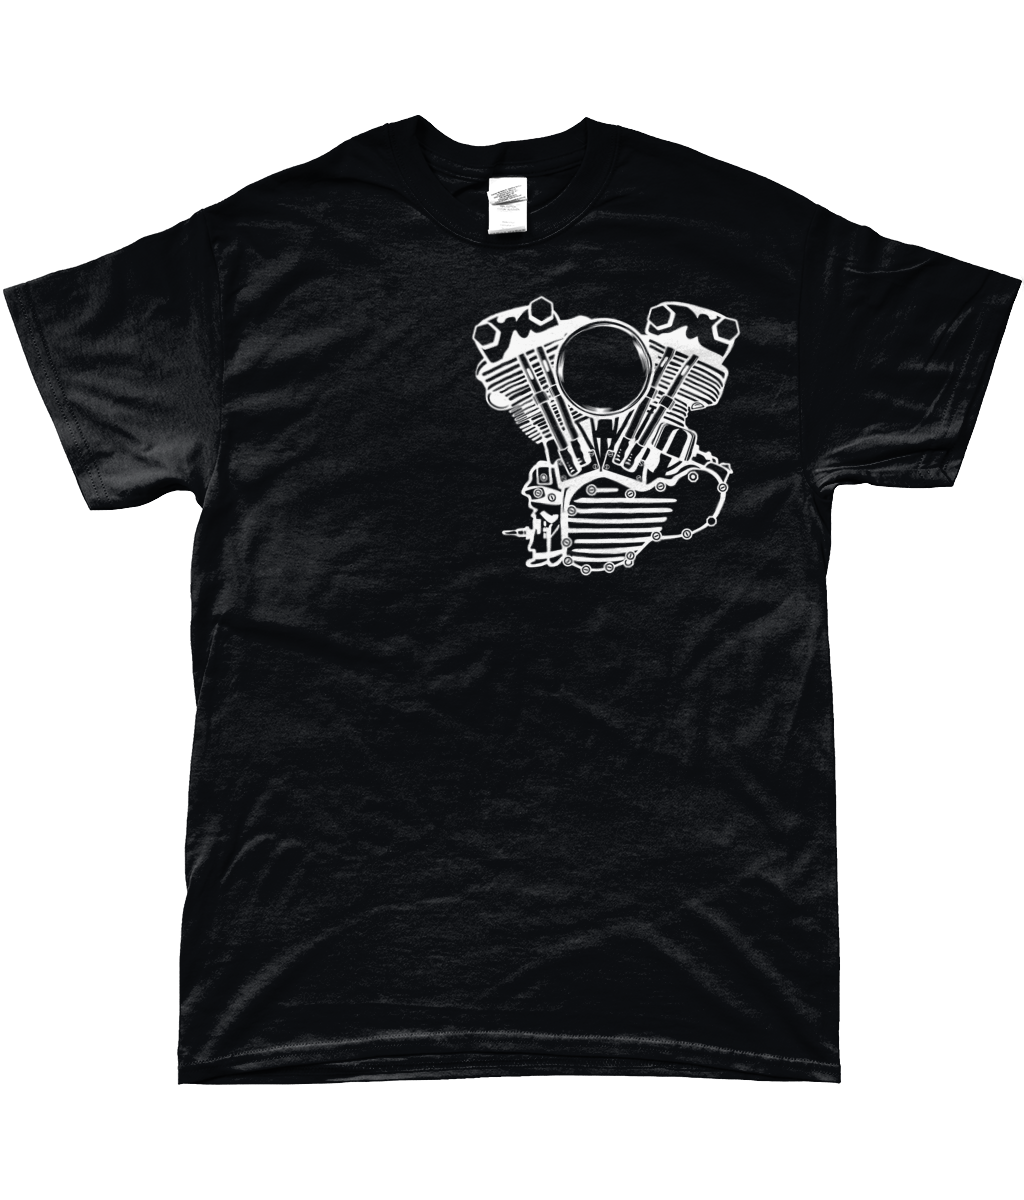 Harley-Davidson Knucklehead Engine T-Shirt v2